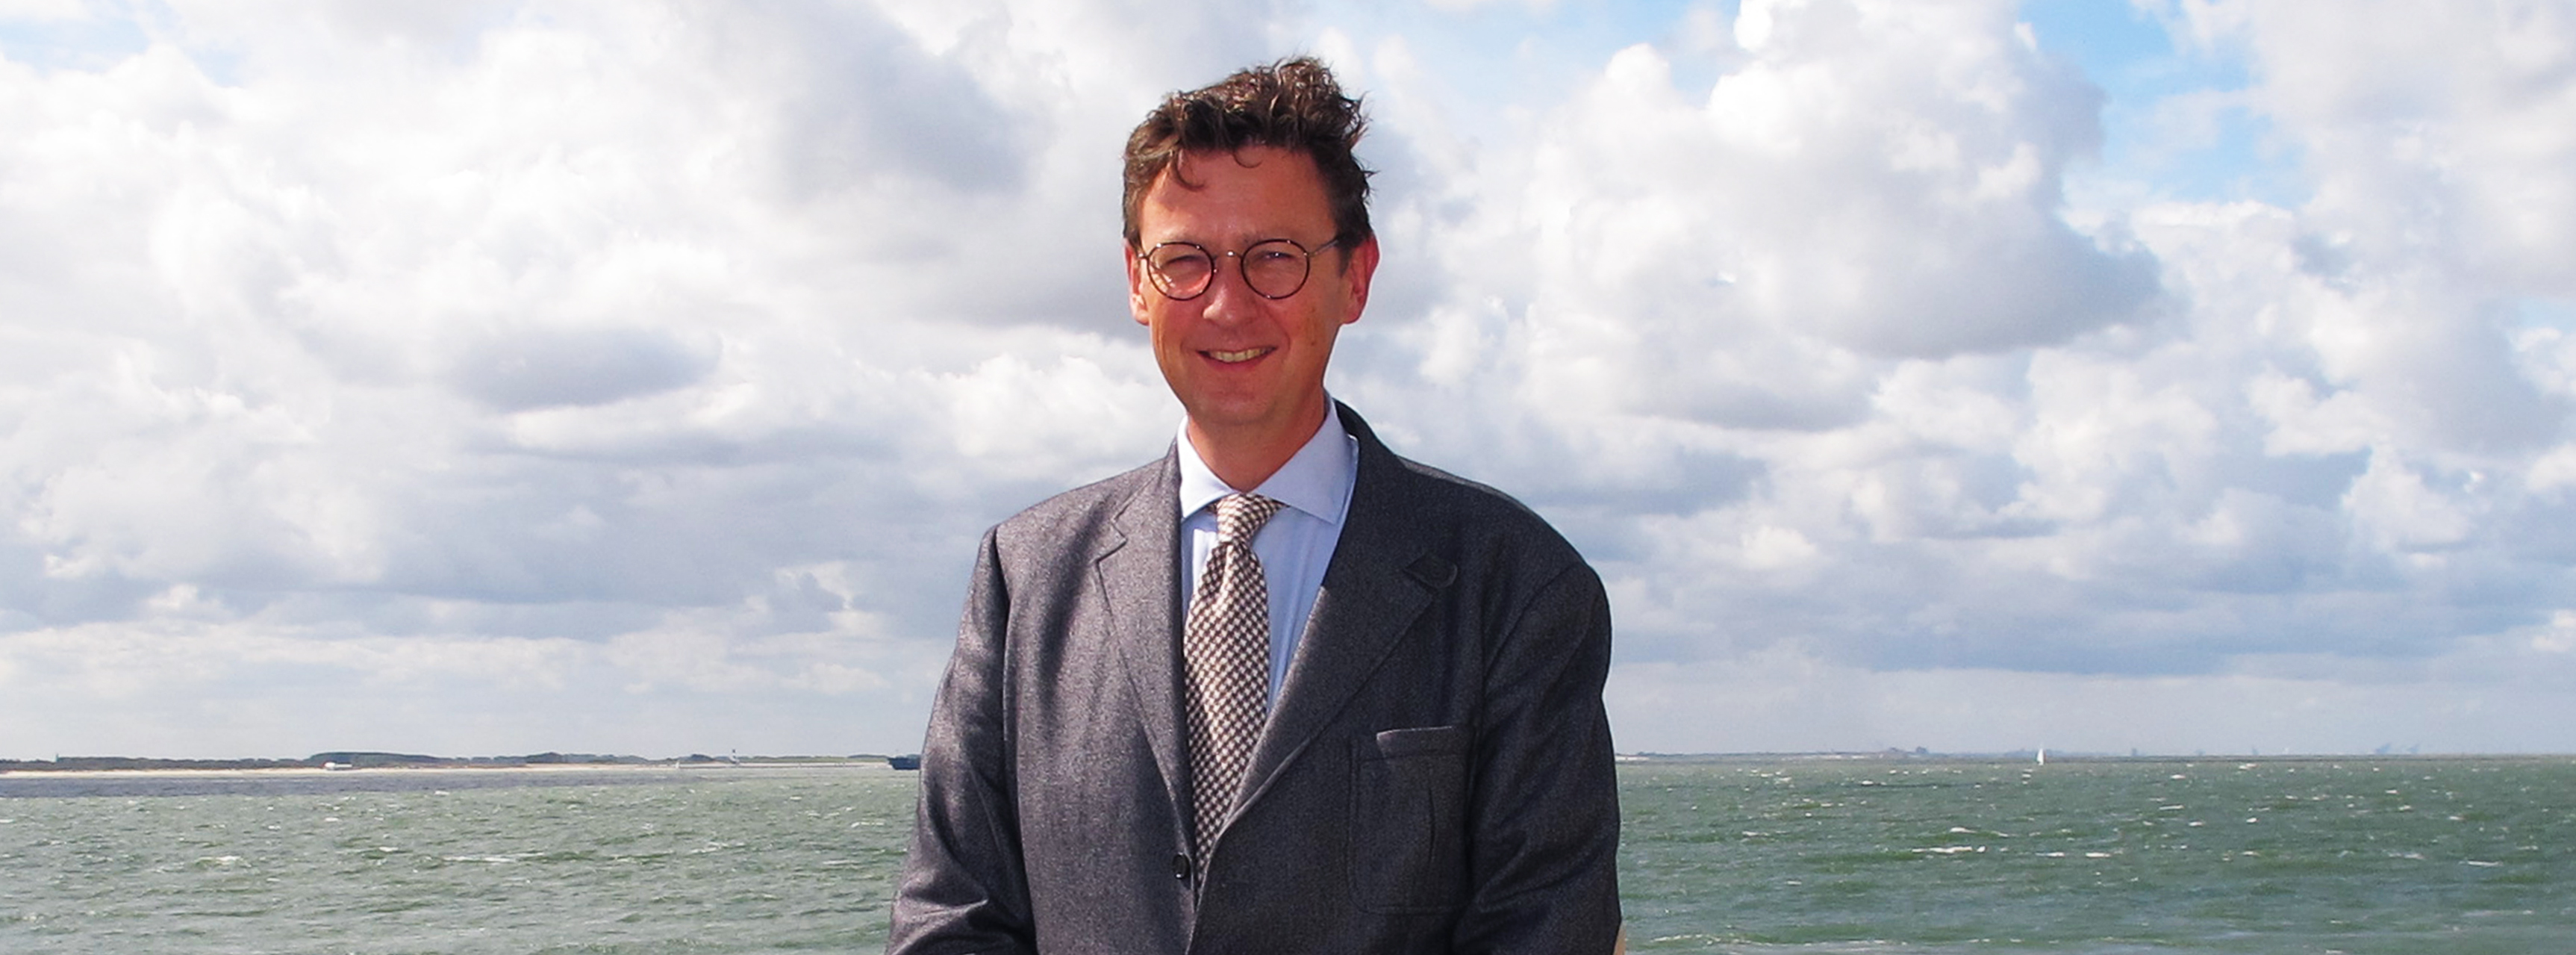 Georg Jaburg, nieuwe voorzitter Loodswezen regio Scheldemonden